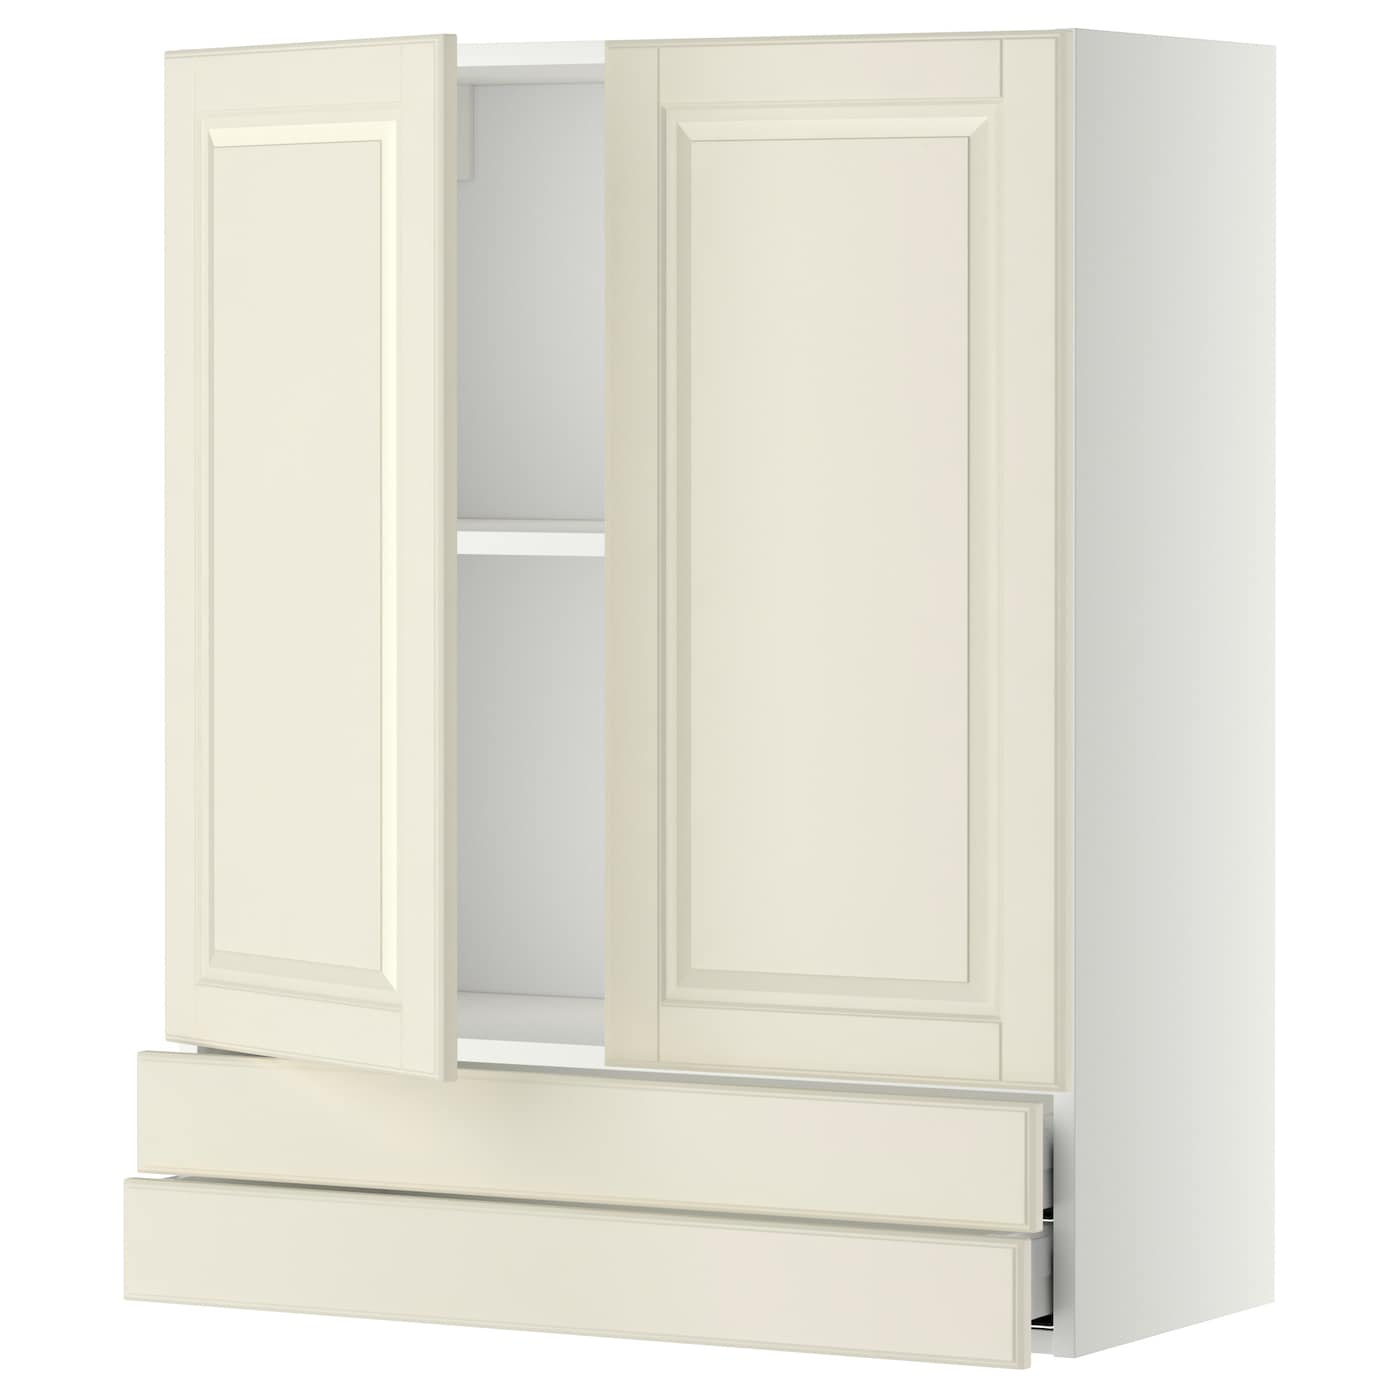 Напольный шкаф - METOD / MAXIMERA IKEA/ МЕТОД/ МАКСИМЕРА ИКЕА,  100х80 см, белый/светло-бежевый